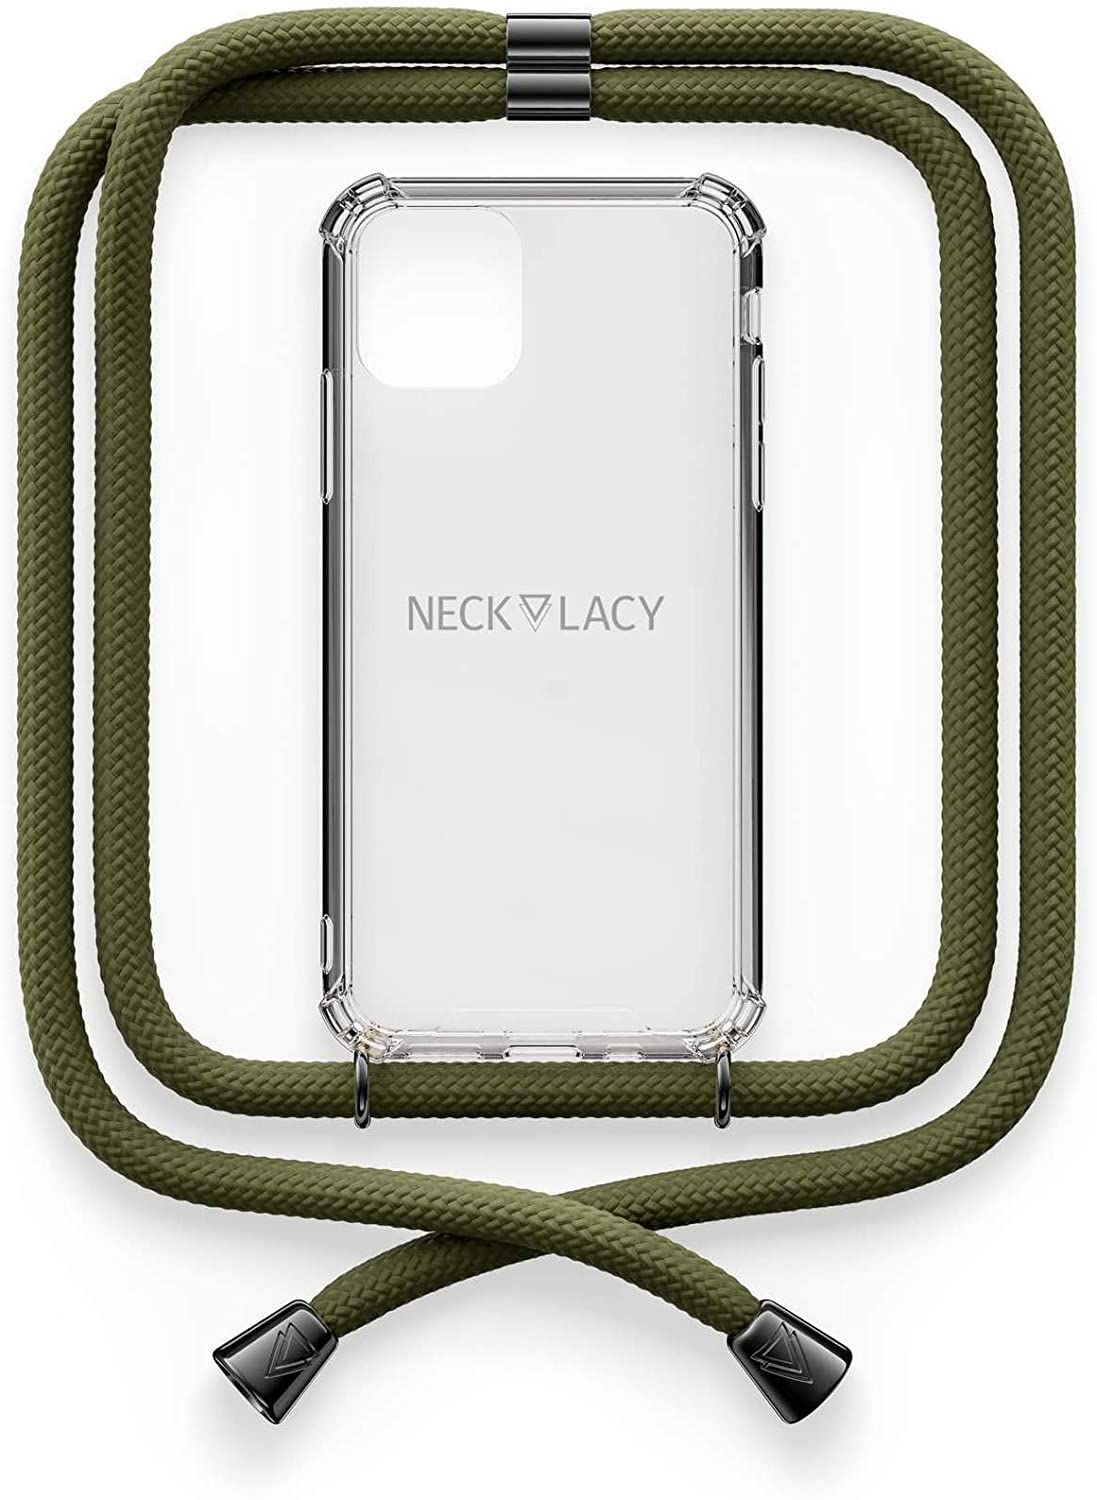 NECKLACY Handykette Handyhülle zum umhängen - für iPhone 11 - Case / Handyhülle mit Band zum umhängen - Trageband Hals mit Kordel - Smartphone Necklace, Dark Olive Gunmetal